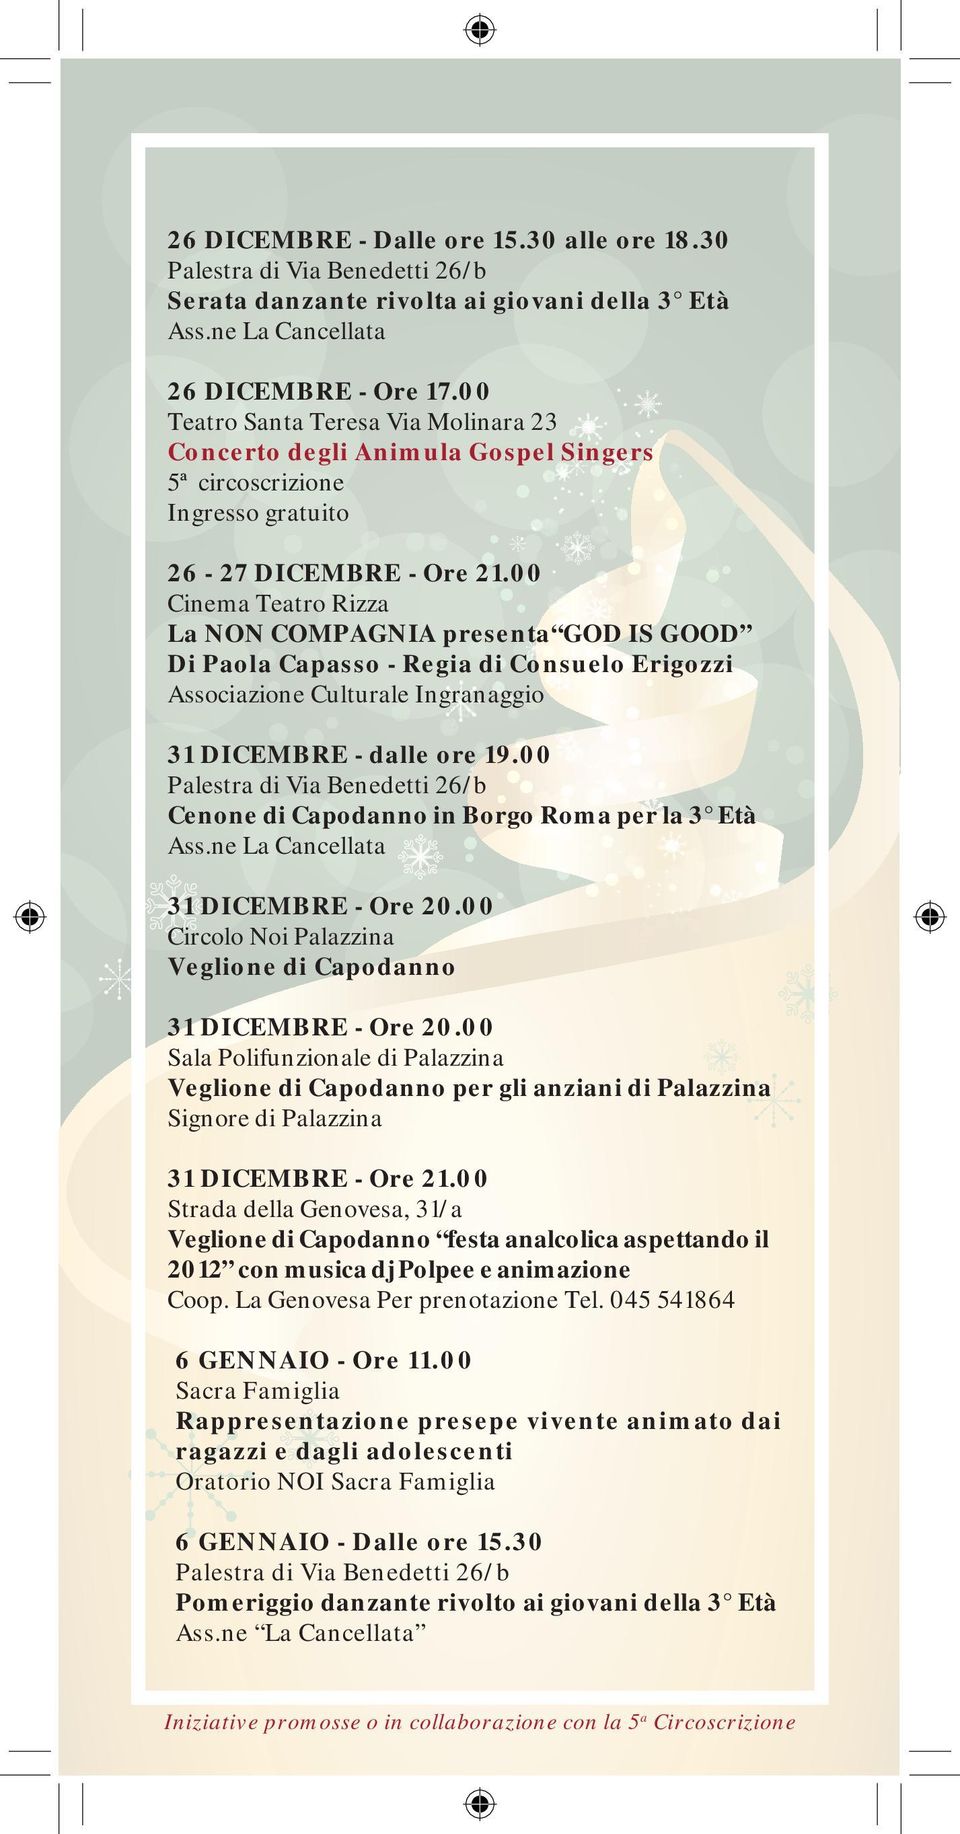 00 Cinema Teatro Rizza La NON COMPAGNIA presenta GOD IS GOOD Di Paola Capasso - Regia di Consuelo Erigozzi Associazione Culturale Ingranaggio 31 DICEMBRE - dalle ore 19.